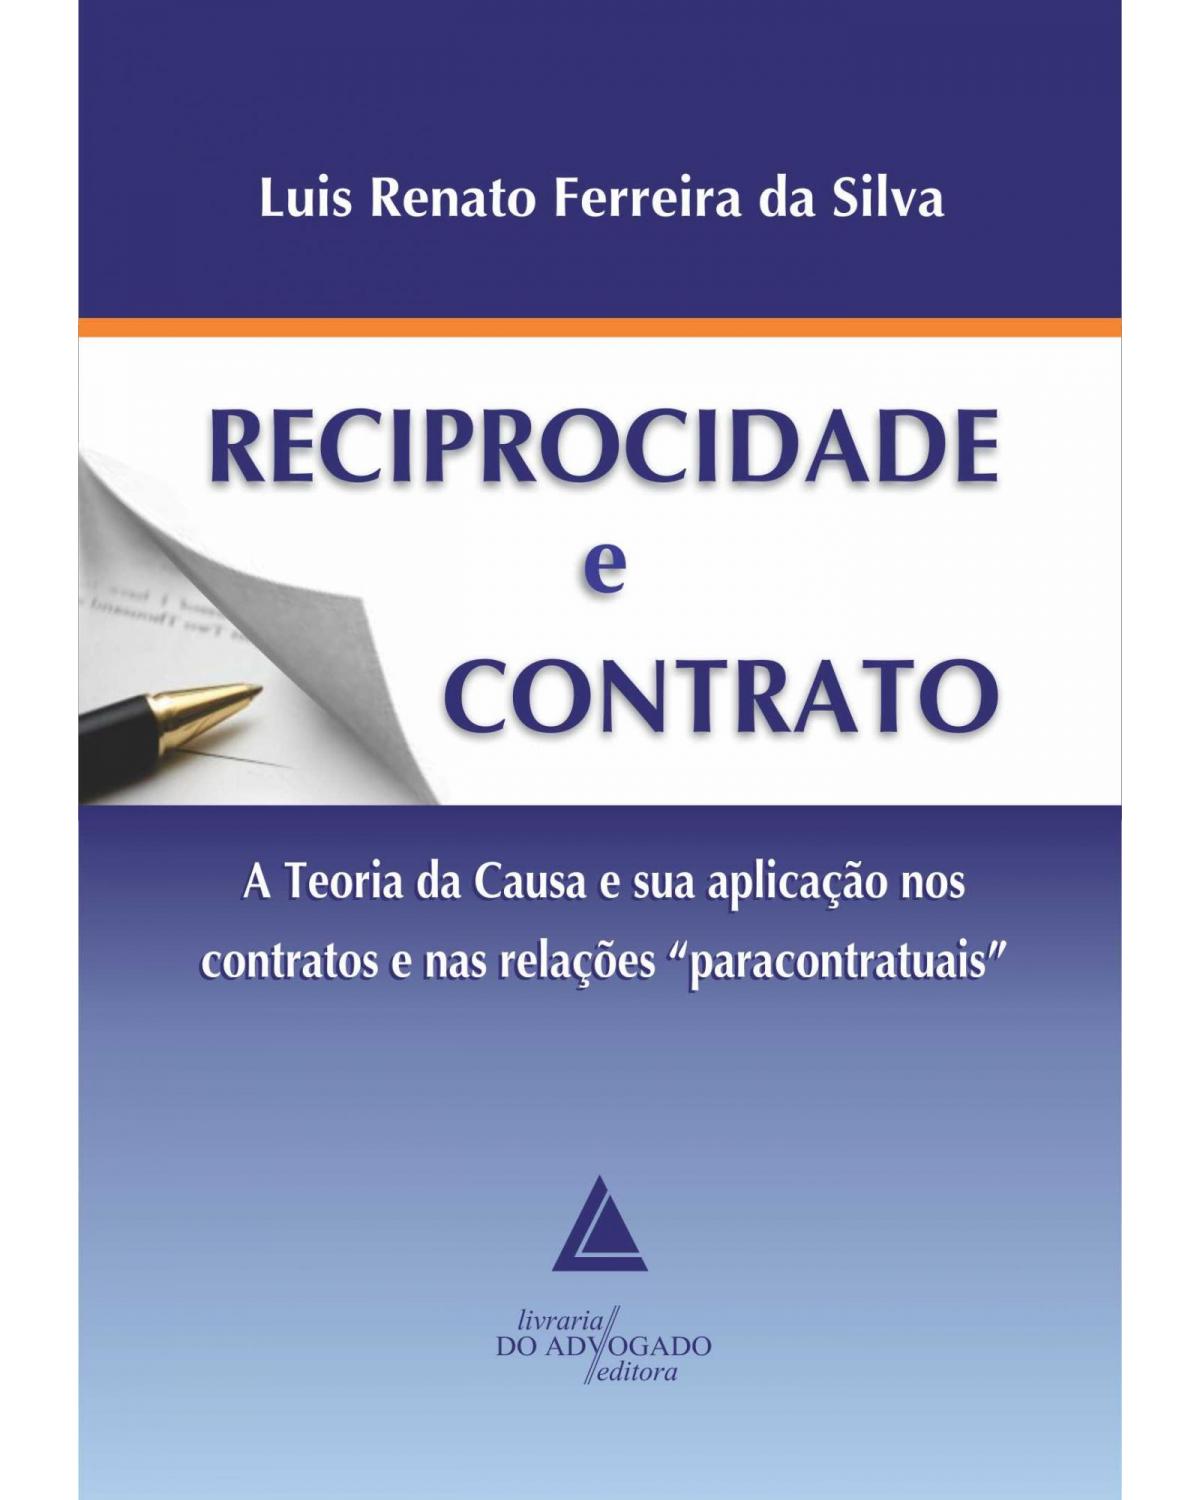 Reciprocidade e contrato: A Teoria da Causa e sua aplicação nos contratos e nas relações "paracontratuais" - 1ª Edição | 2013